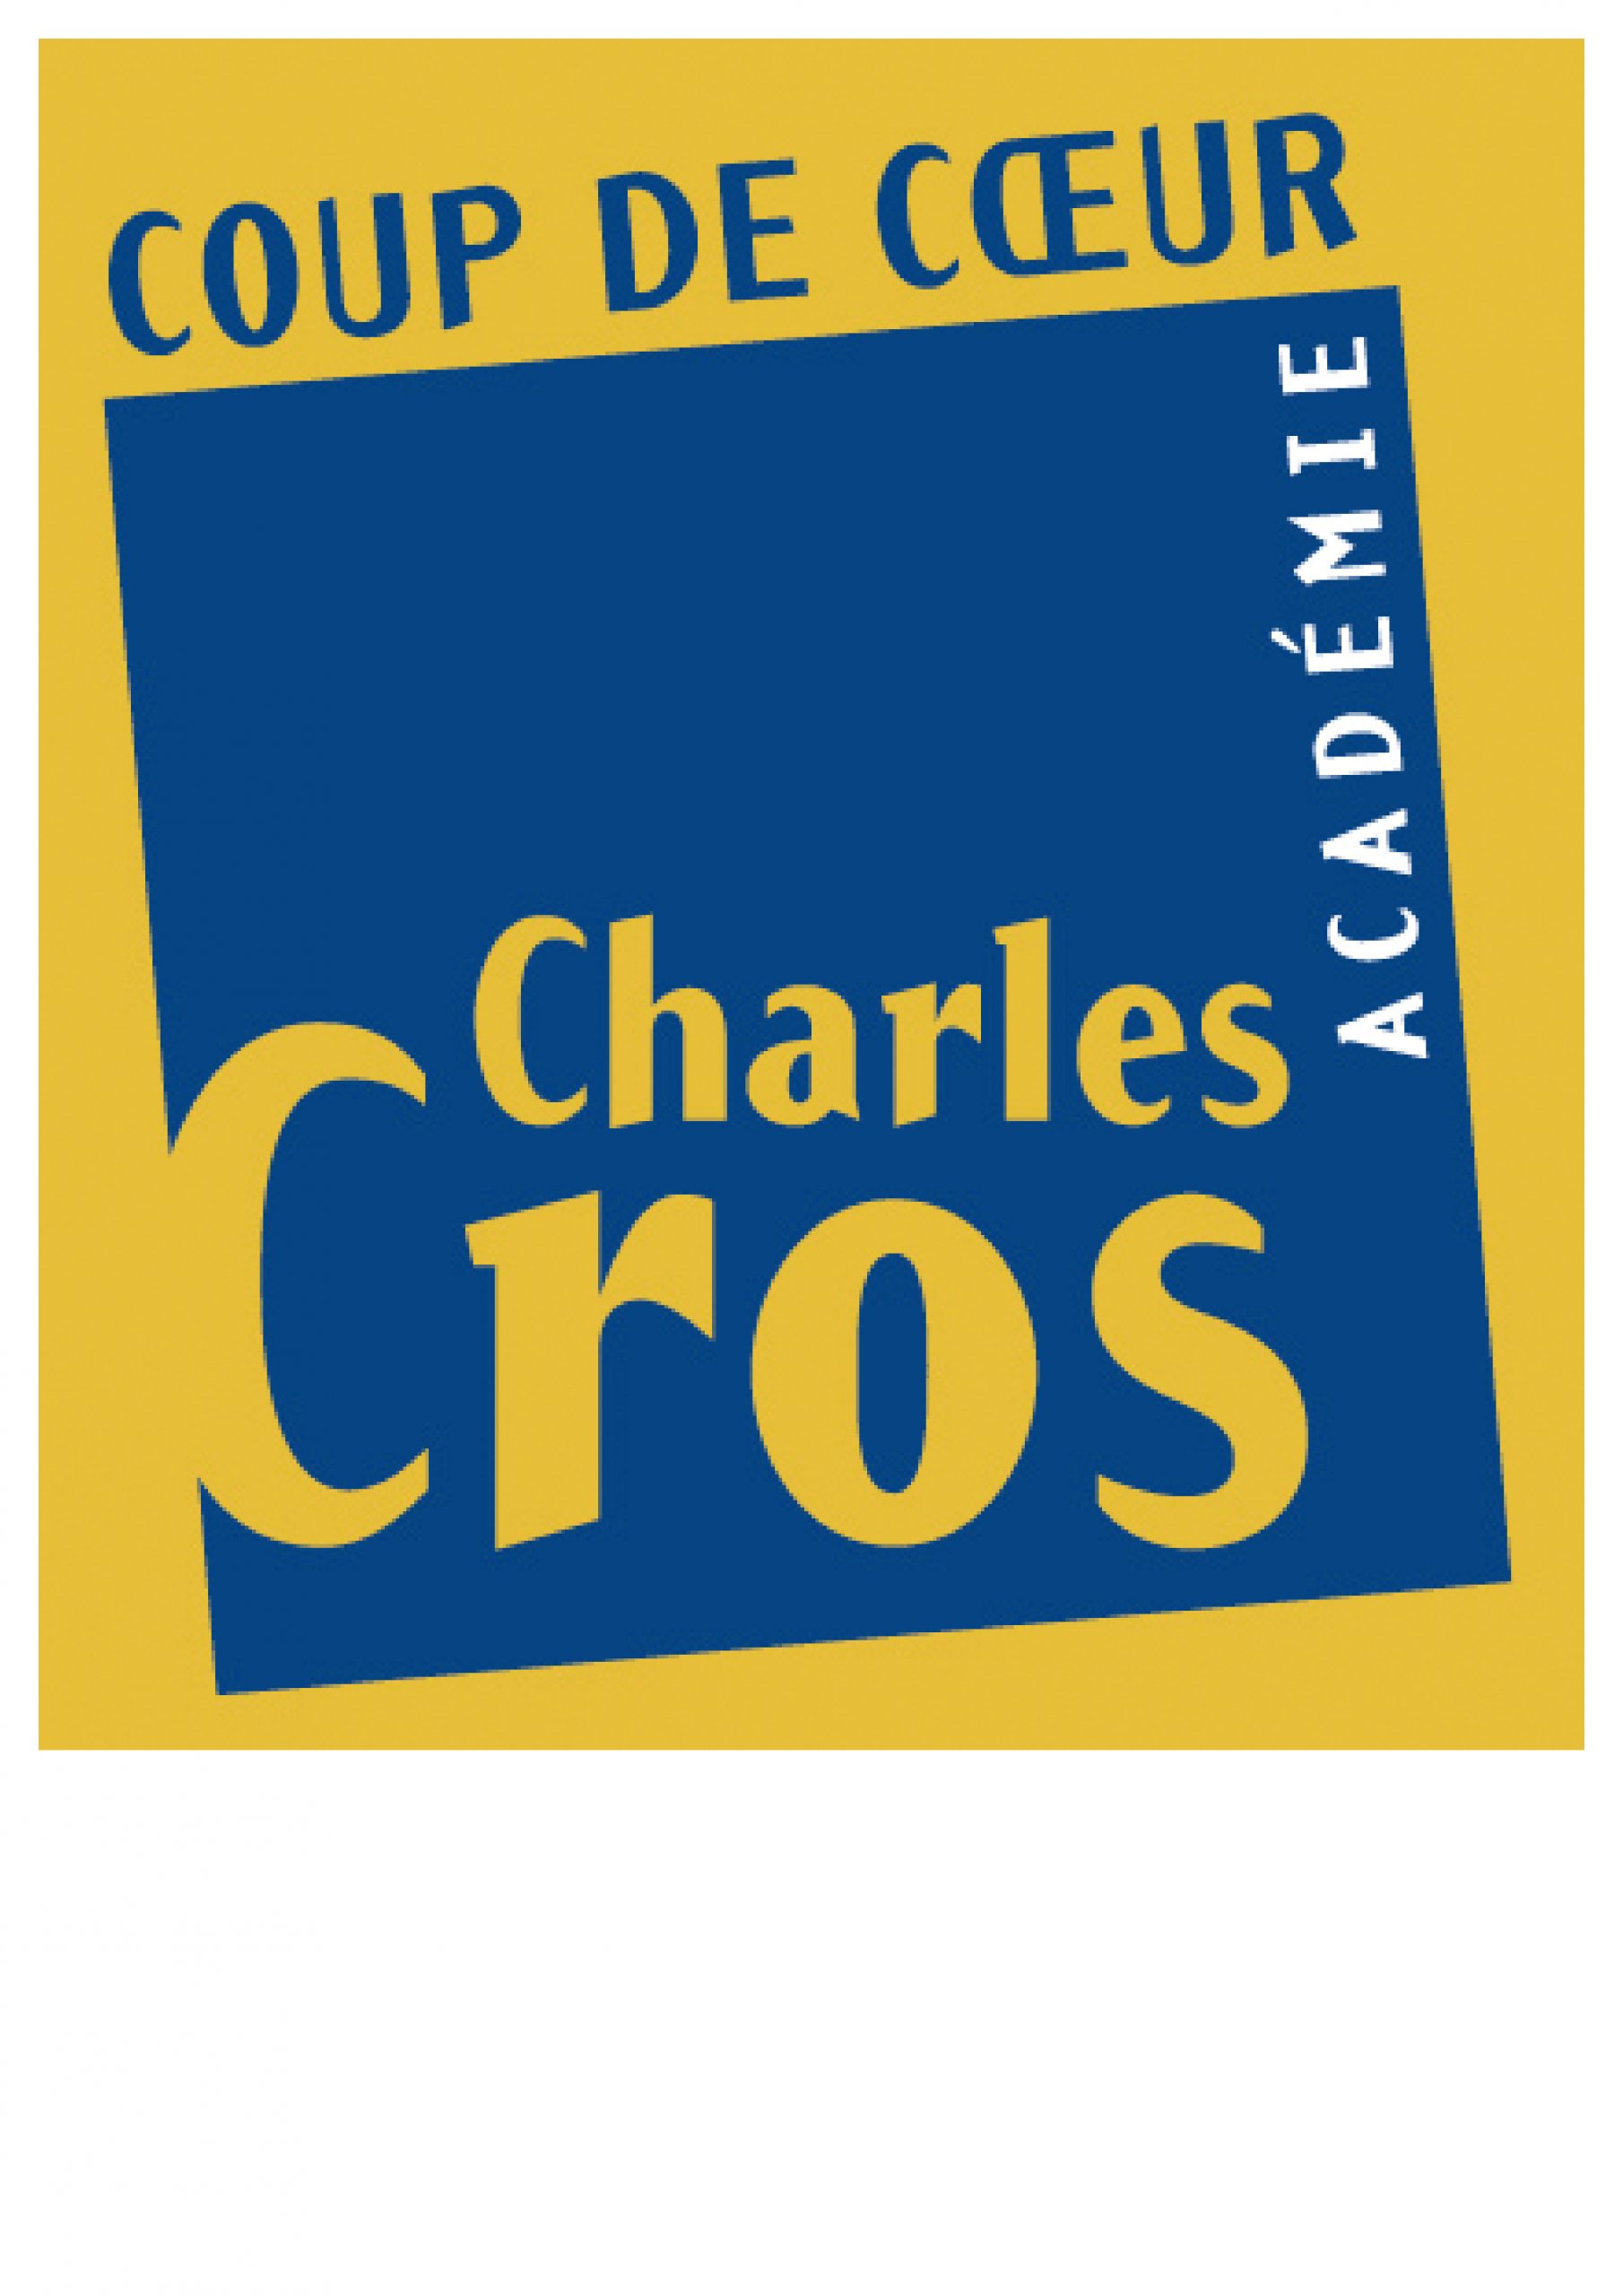 Académie Charles Cros – VIVA coup de cœur 2015